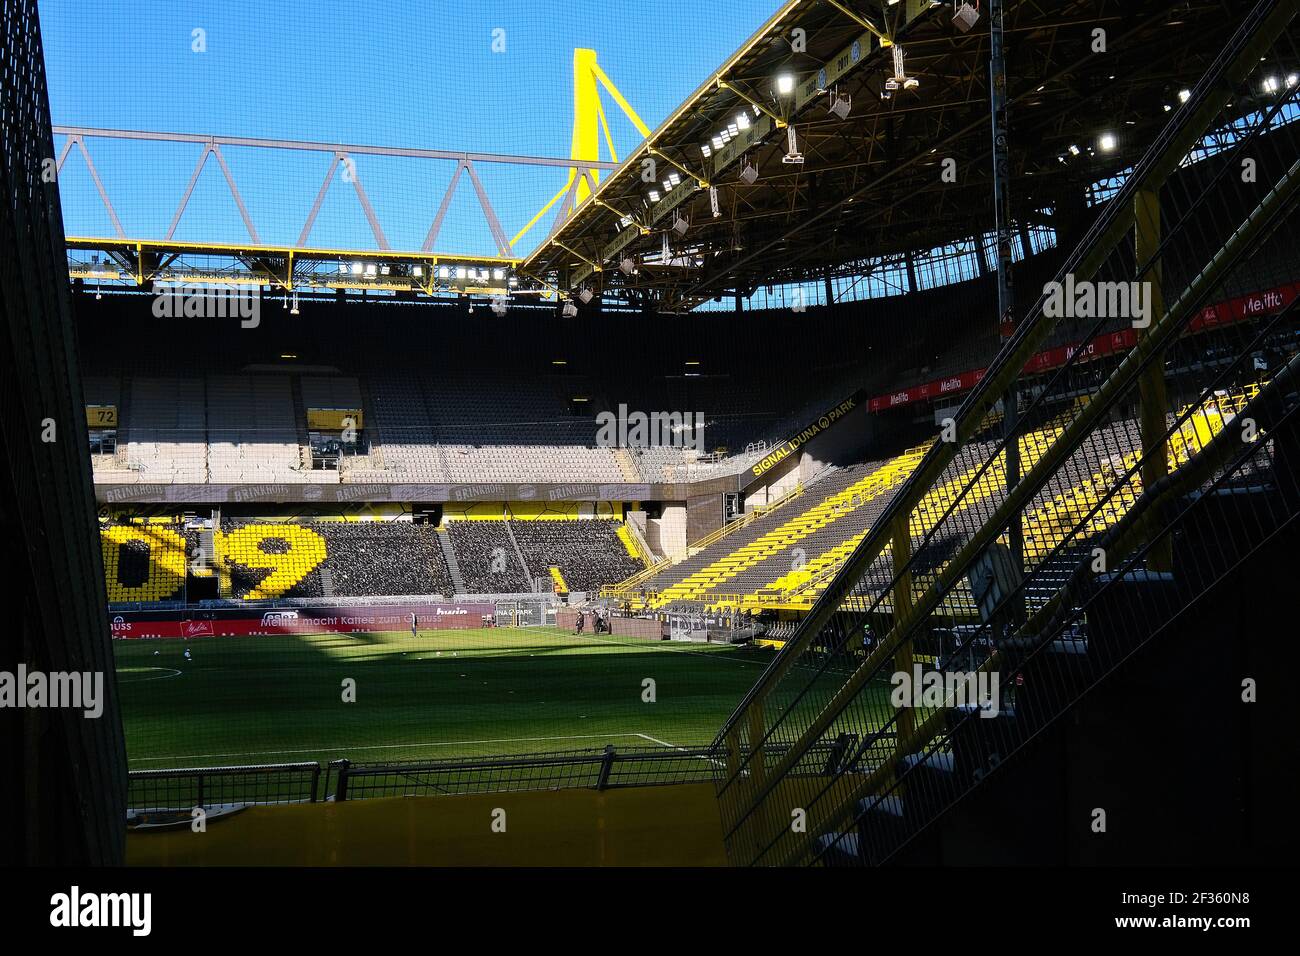 Le stade vide de Borussia Dortmund, signal Iduna Park. Anciennement connu sous le nom de Westfalenstadion. Dortmund, Rhénanie-du-Nord-Westfalia, Allemagne Banque D'Images